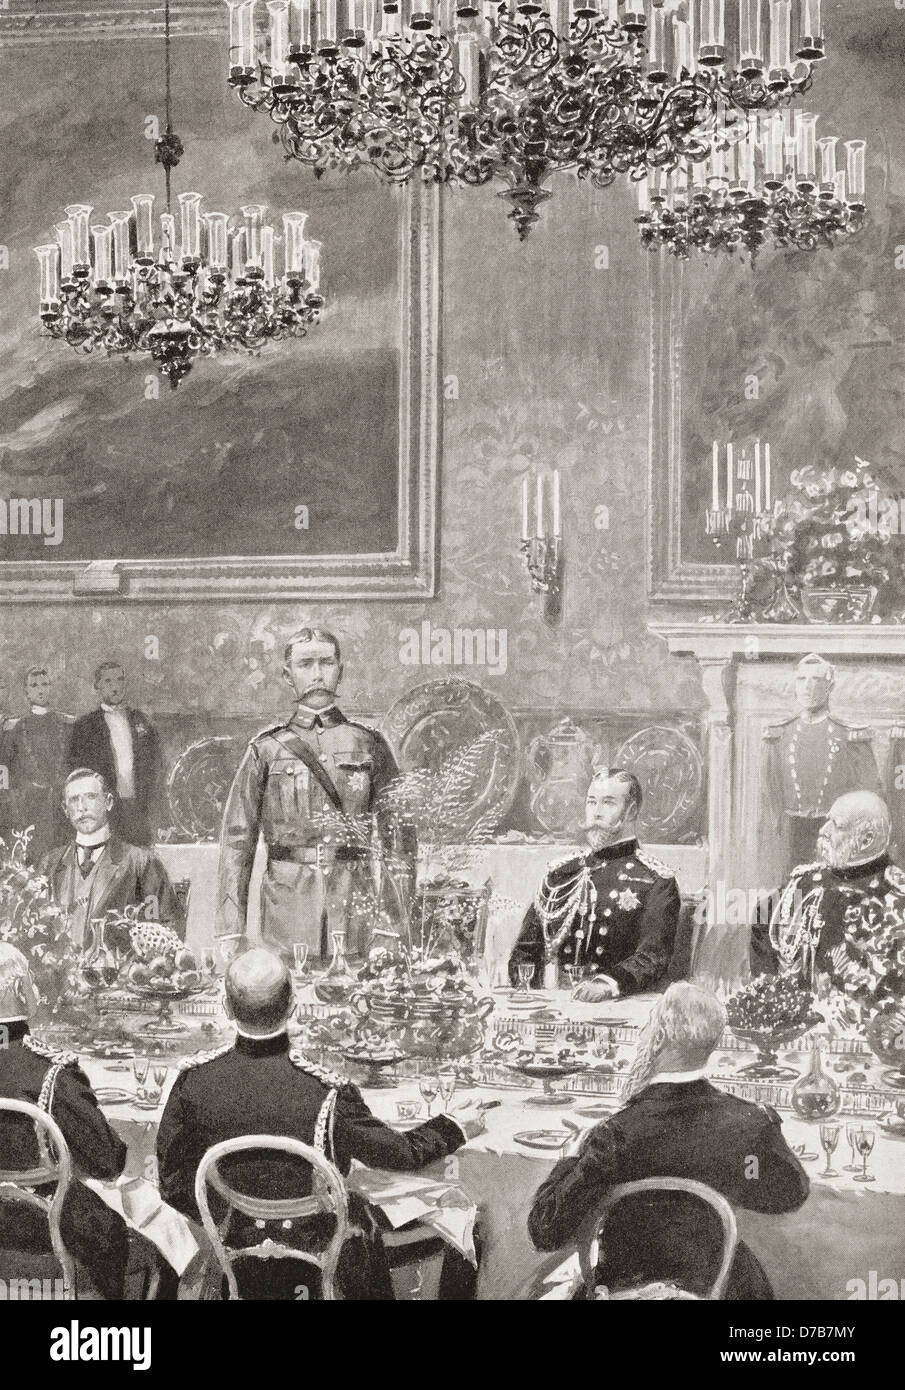 Lord Kitchener risponde a un toast al banchetto presso il St James Palace di Londra, luglio 12, 1902 tenuto per festeggiare il suo rientro in patria. Foto Stock